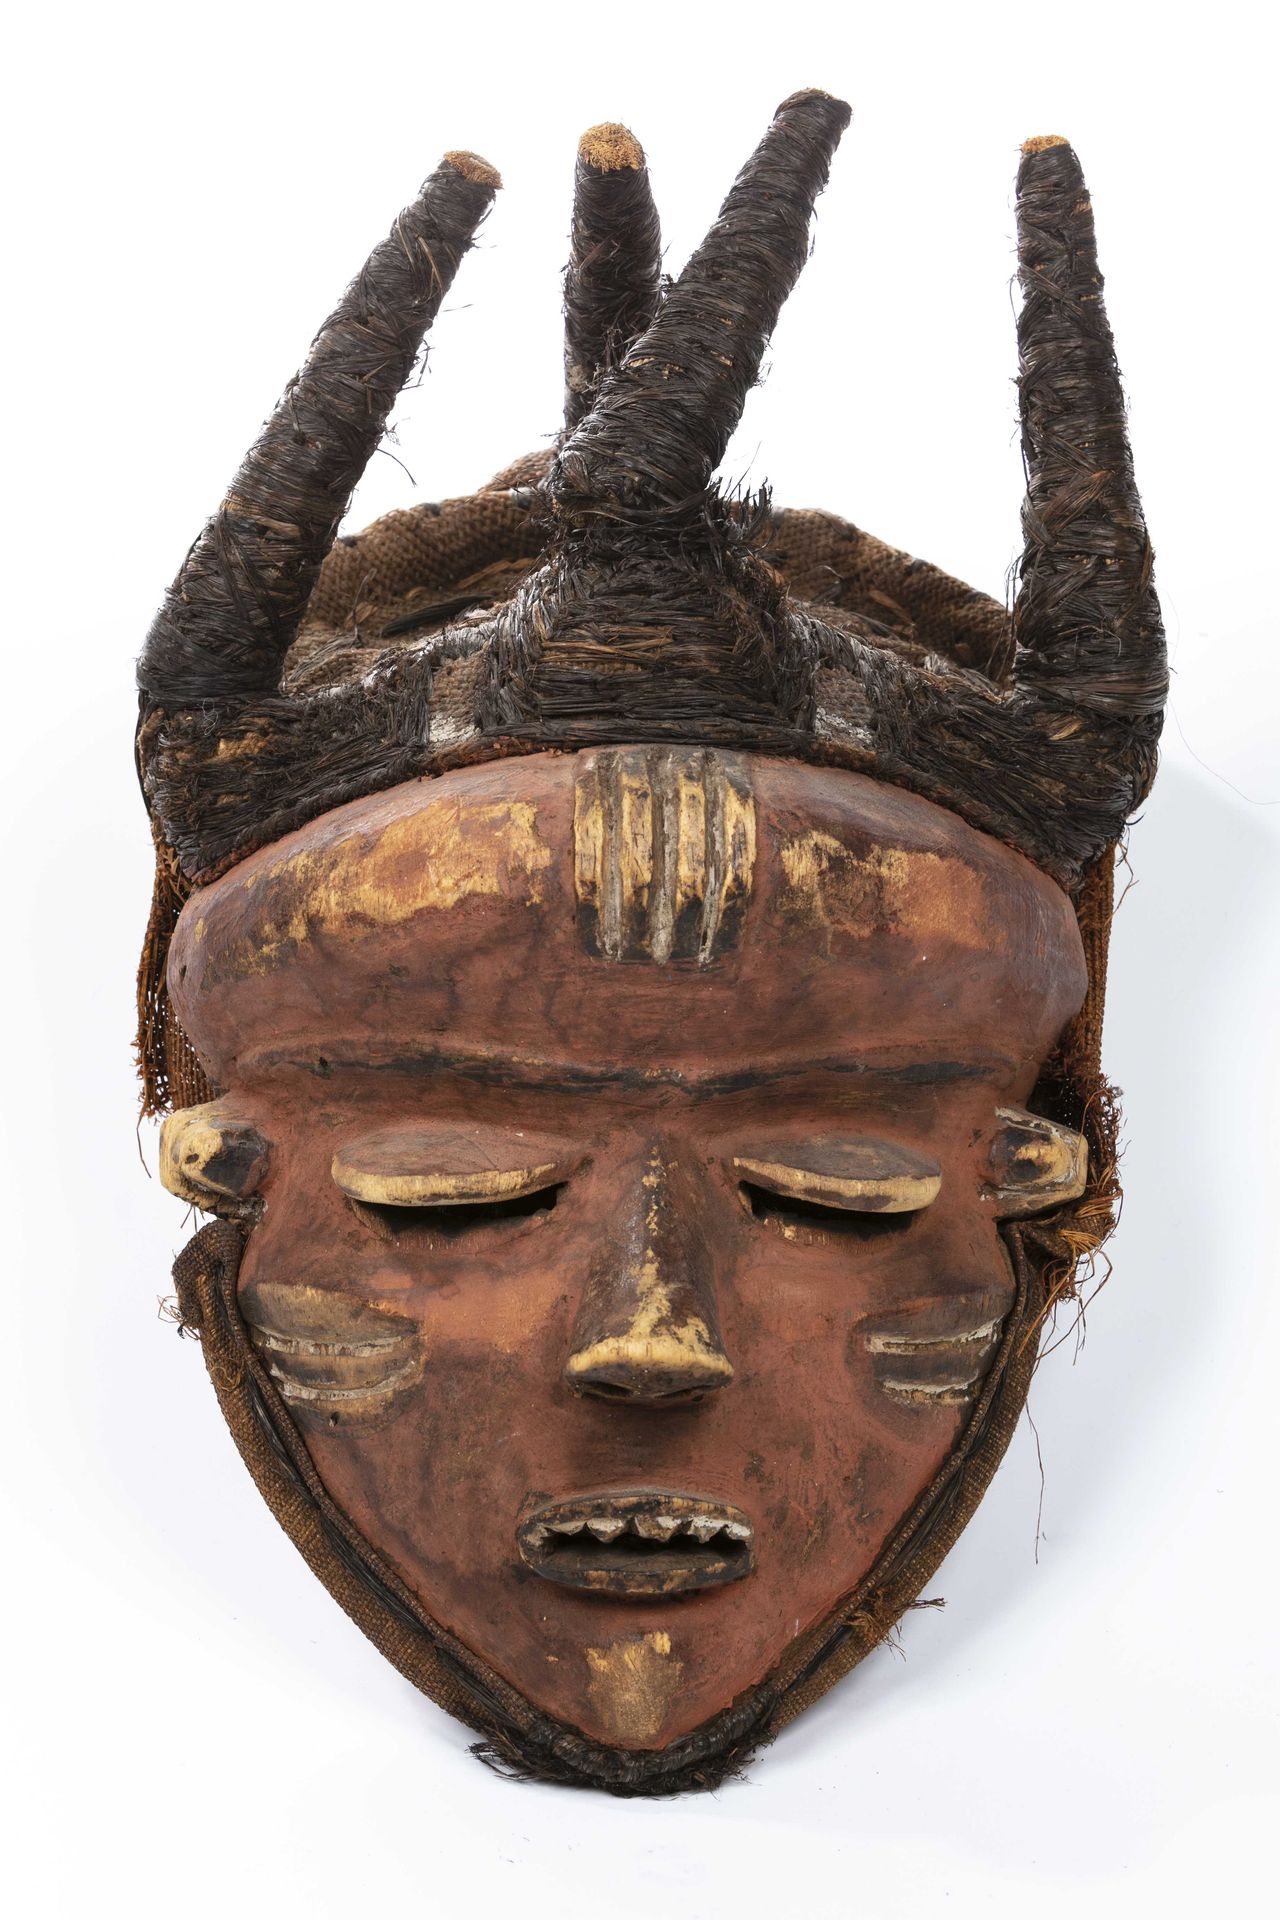 Null 萨兰帕苏式面具，刚果民主共和国 
木材、纤维 
高：43厘米 
脸部扁平的面具，充满了宁静。眼睛是闭着的，眼皮是用黄色突出的。额头上有一系列垂直的黄色&hellip;